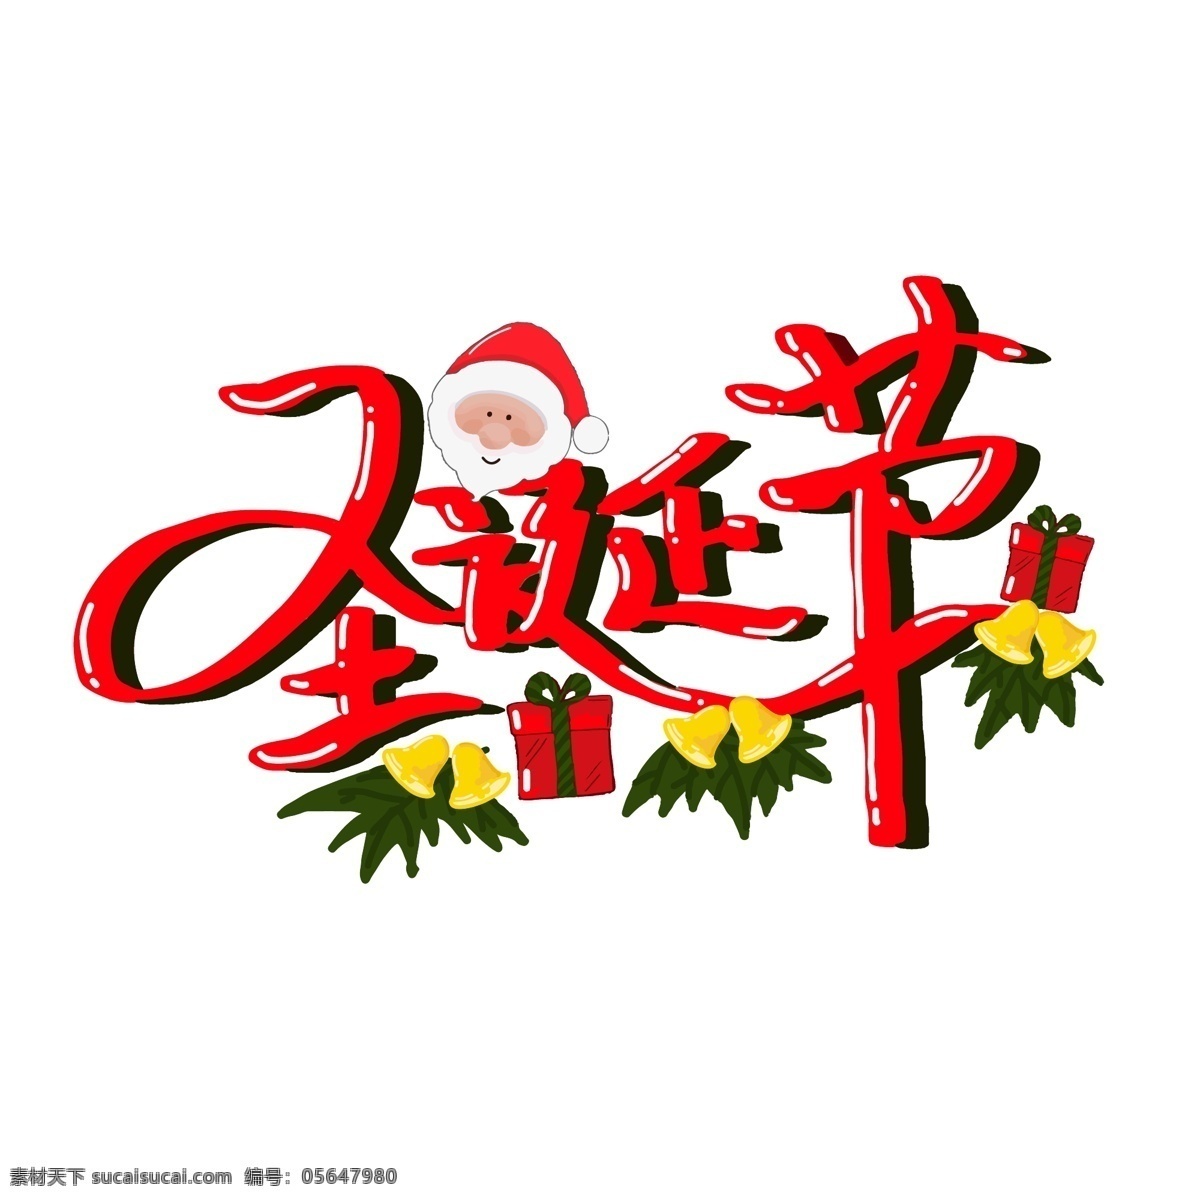 圣诞节 艺术 字体 矢量 元素 圣诞字体 圣诞老人 矢量字体 圣诞气氛 艺术元素字体